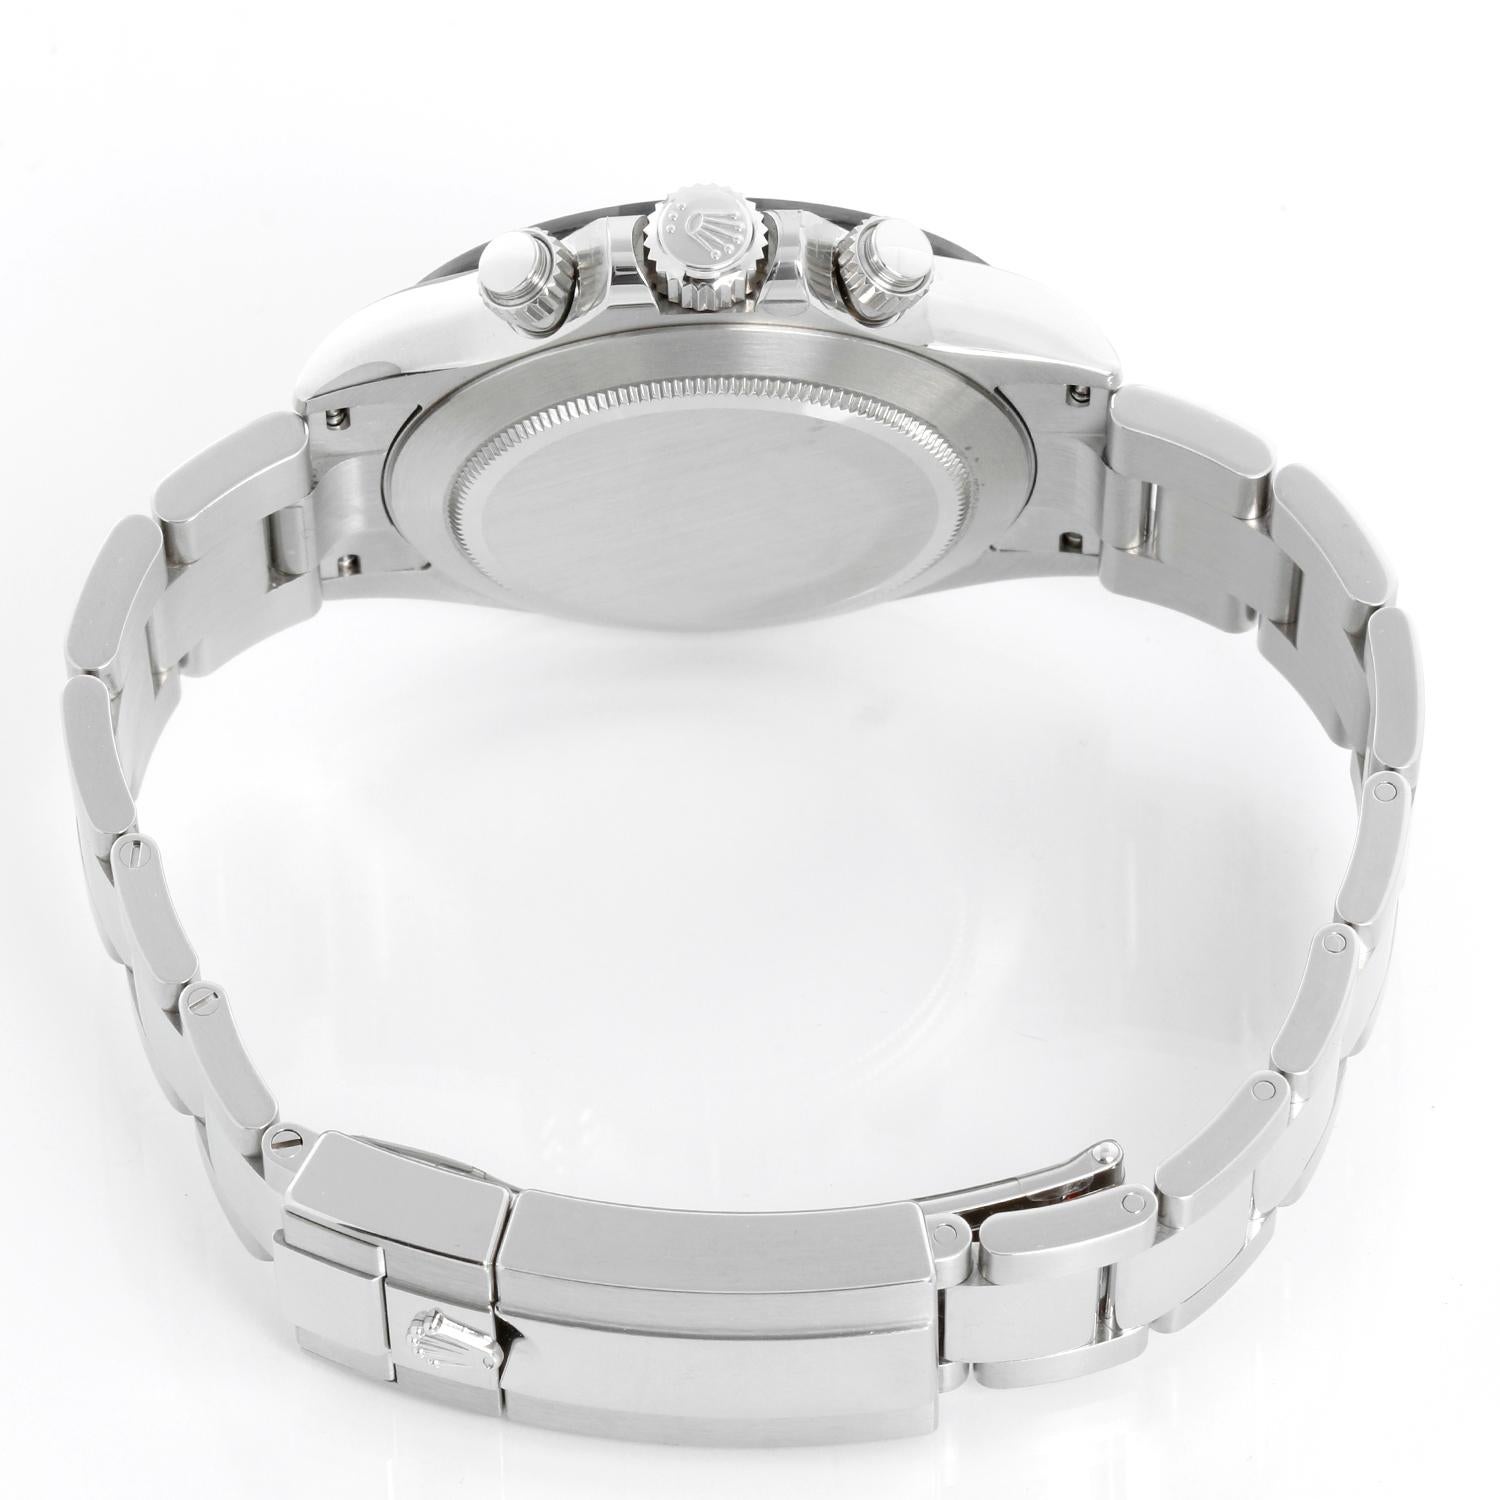 Rolex Ceramic White dial Cosmograph Daytona 116500LN In Excellent Condition For Sale In Dallas, TX